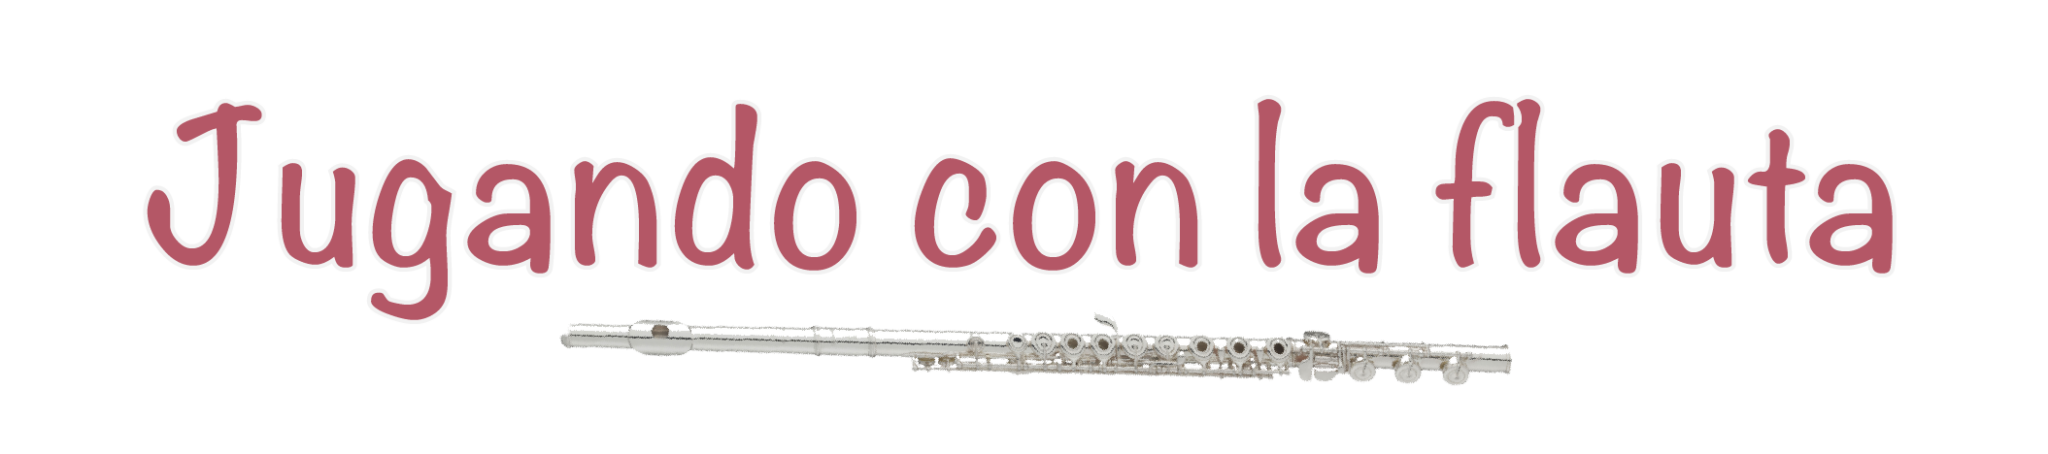 Logo Jugando con la flauta